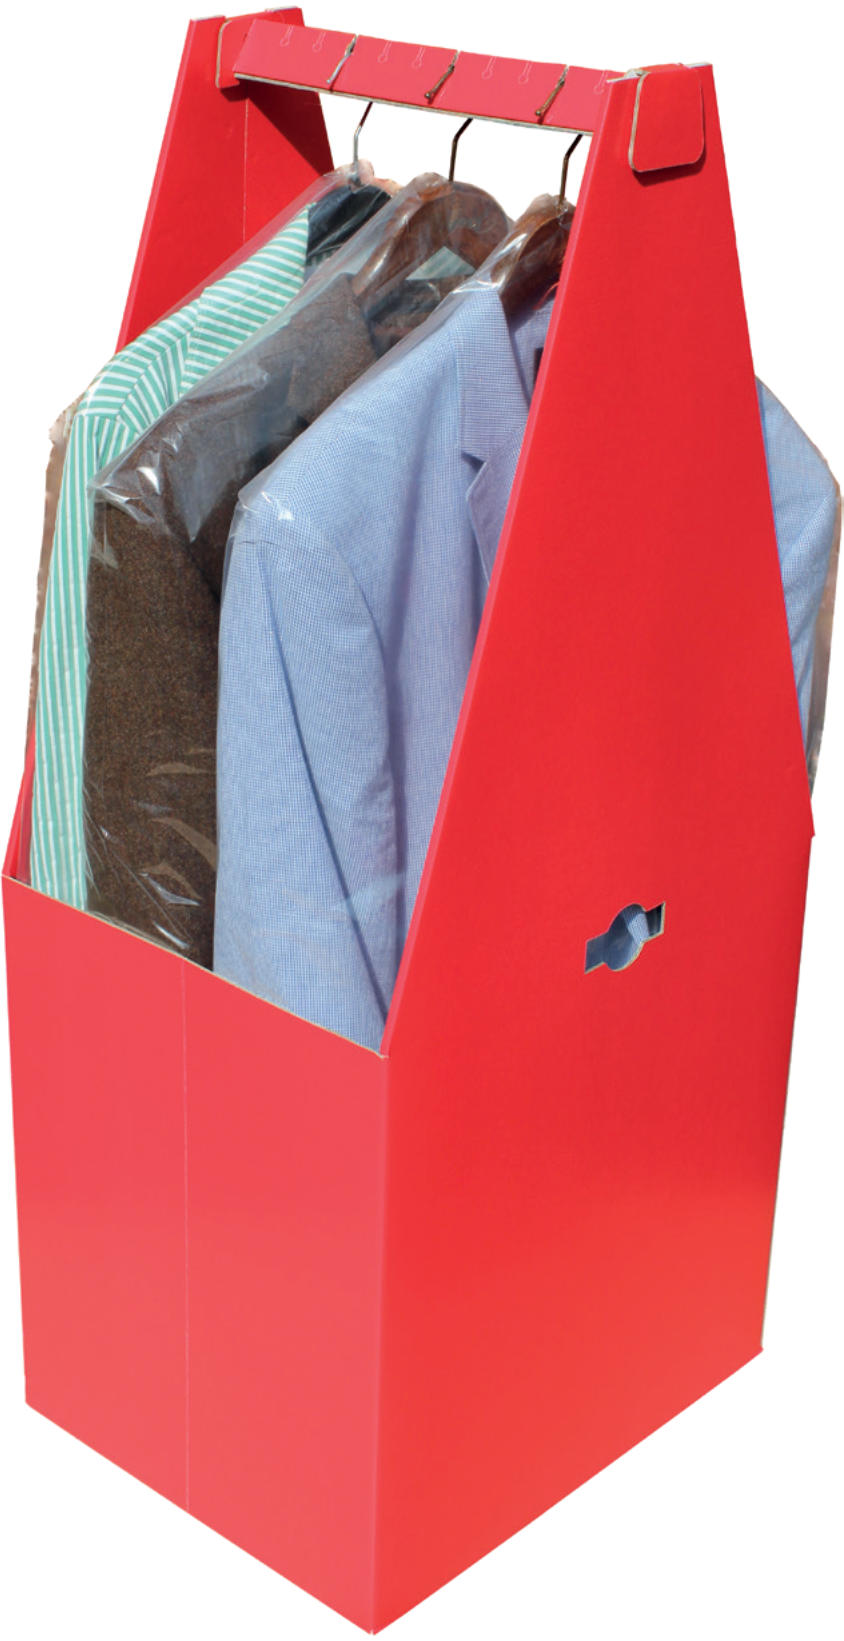 Transportverpackung für hängende Kleidung - Kleiderbox